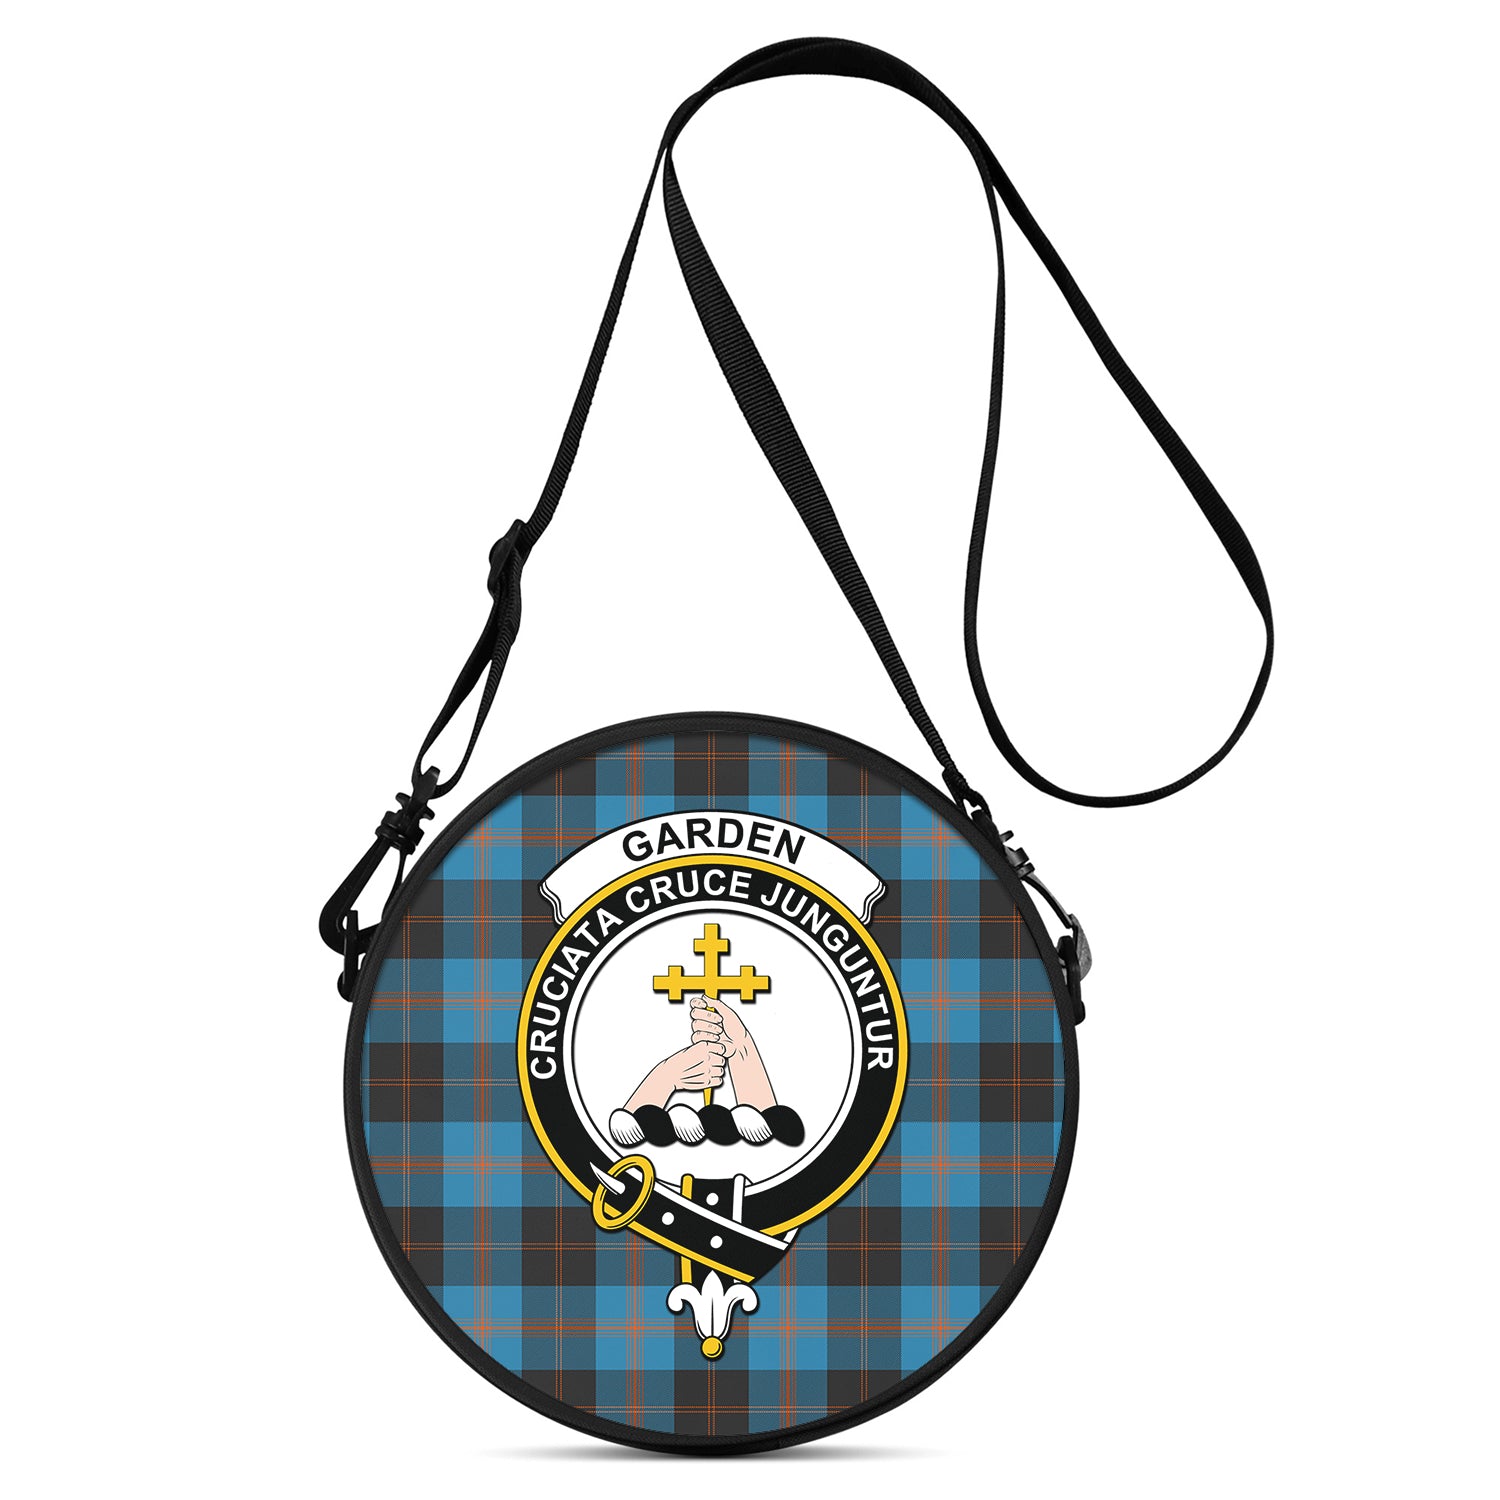 garden-tartan-round-satchel-bags-with-family-crest